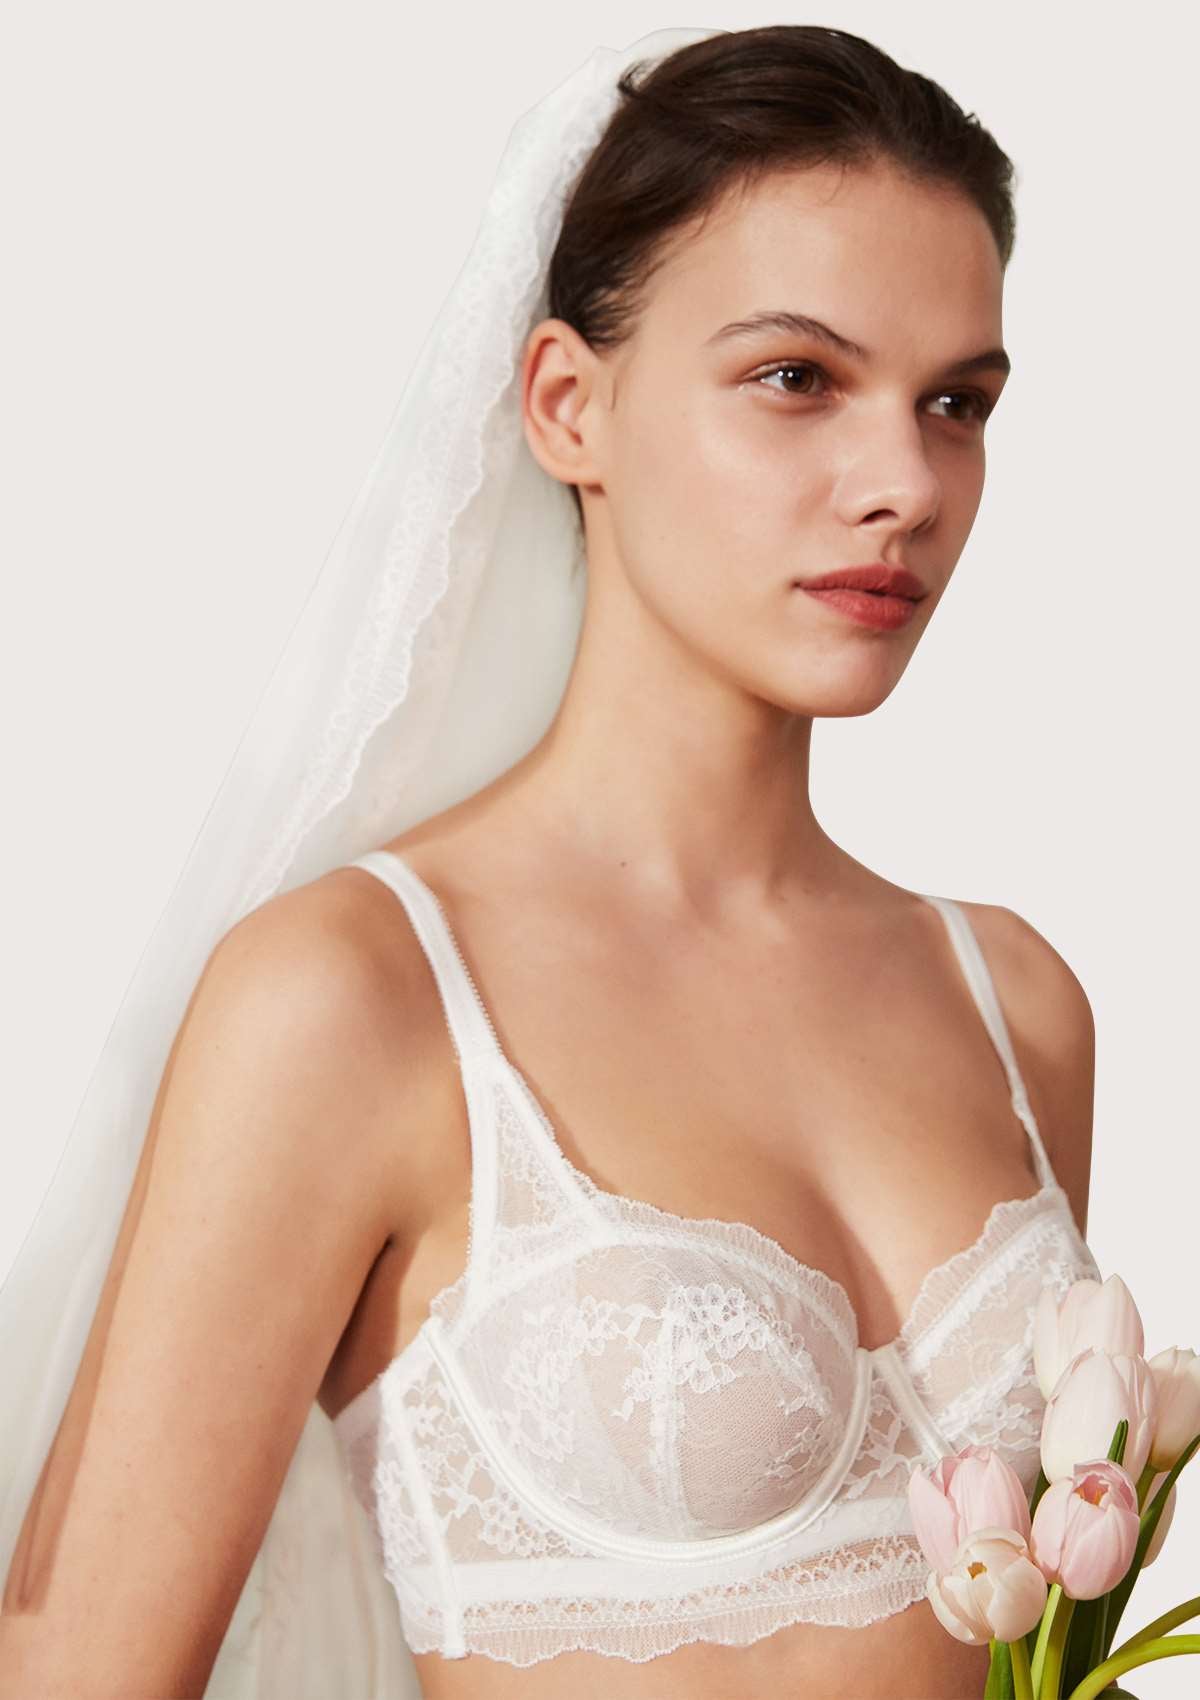 HSIA Floral Lace Unlined Bridal Romantic Balconette Bra Panty Set  - White / 40 / D